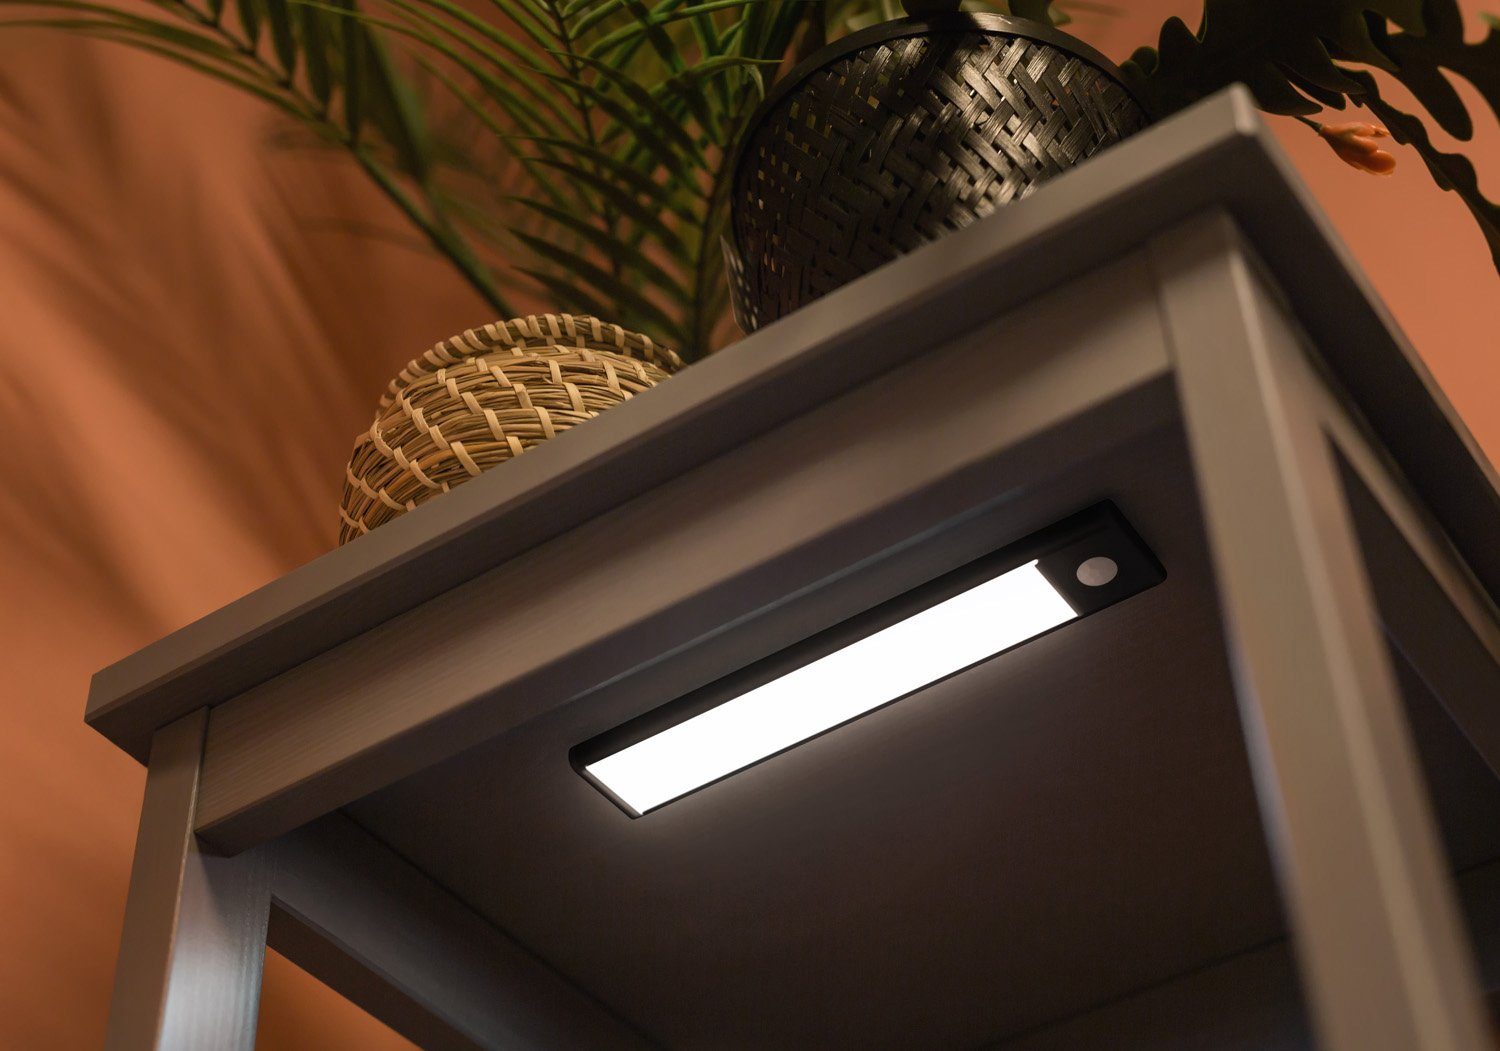 PRECORN Schrankleuchte Schranklicht Lichtleiste 20cm LED´s schwarz 34 USB mit wiederaufladbar